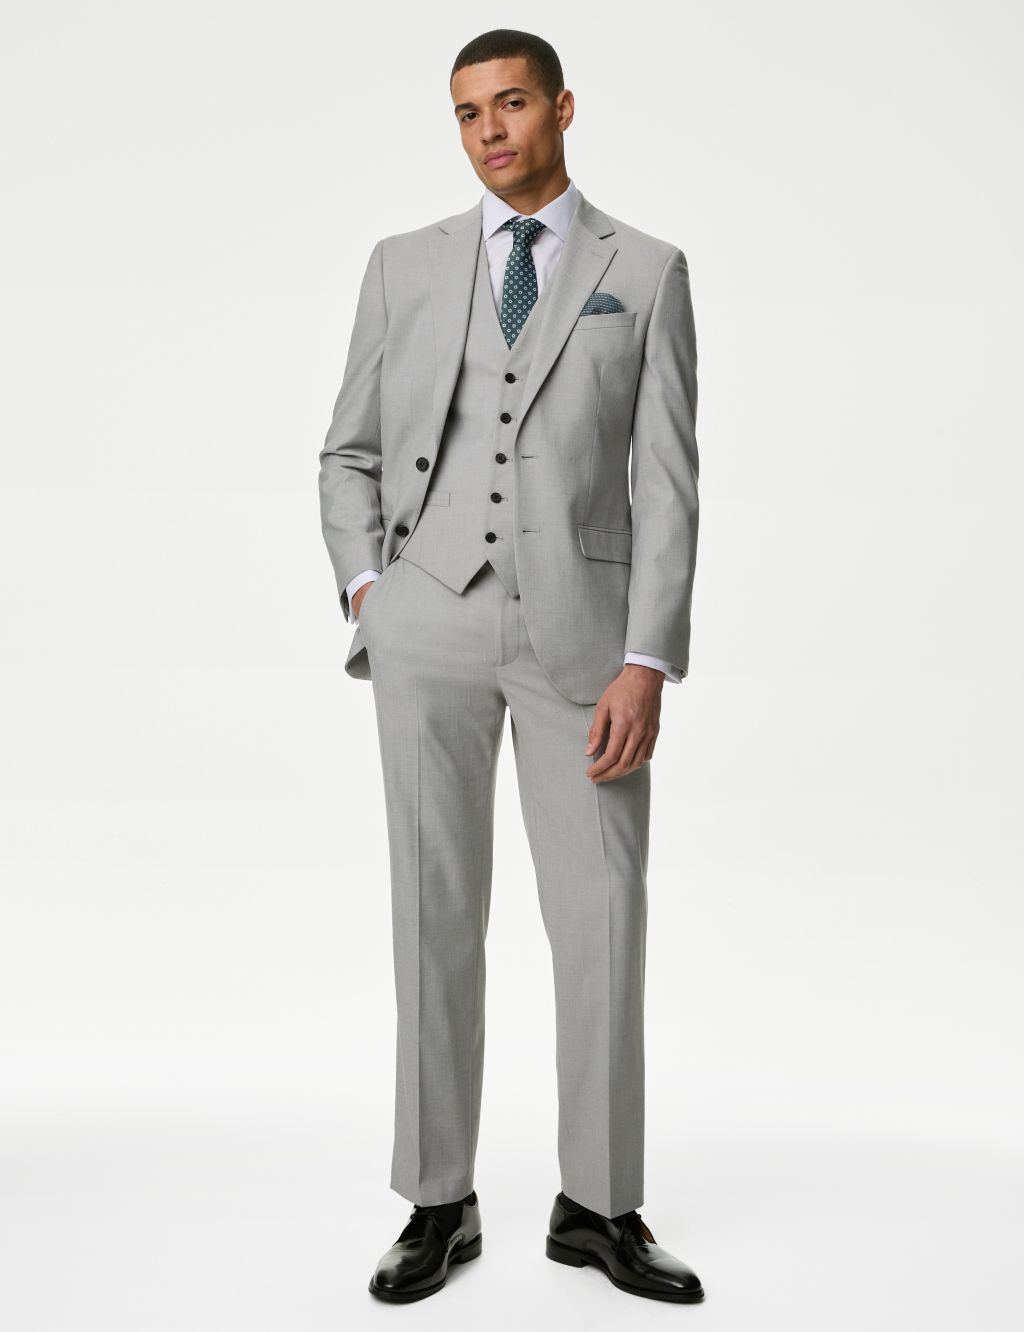 Shop Men's Regular Fit Suits at M&S